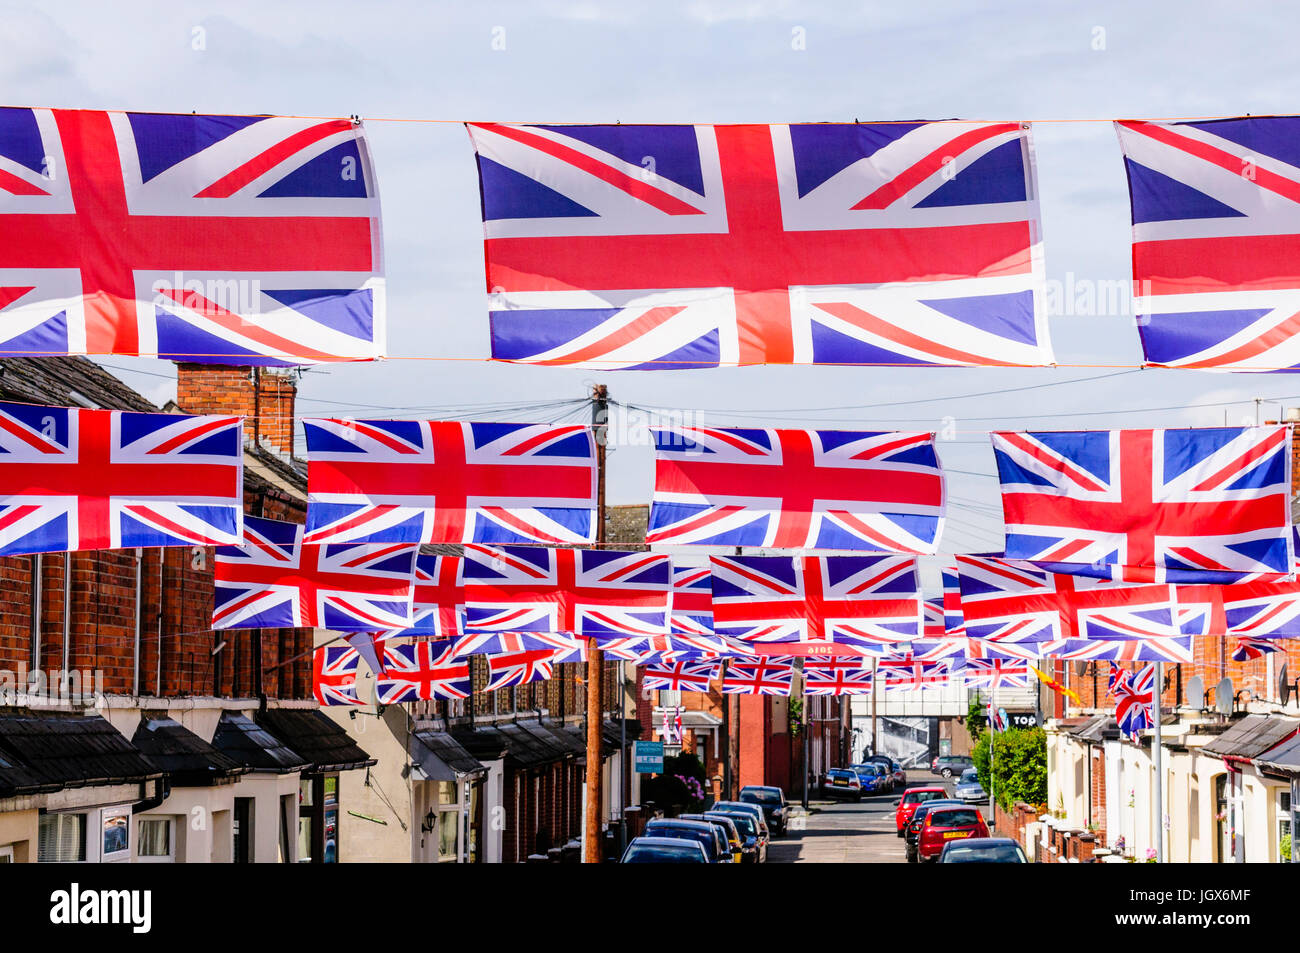 Belfast, Nordirland, Irland. 11. Juli 2017. Die Moorgate Street in East Belfast ist in Union Flags für die jährlichen Feierlichkeiten am 12. Juli dekoriert. Stockfoto